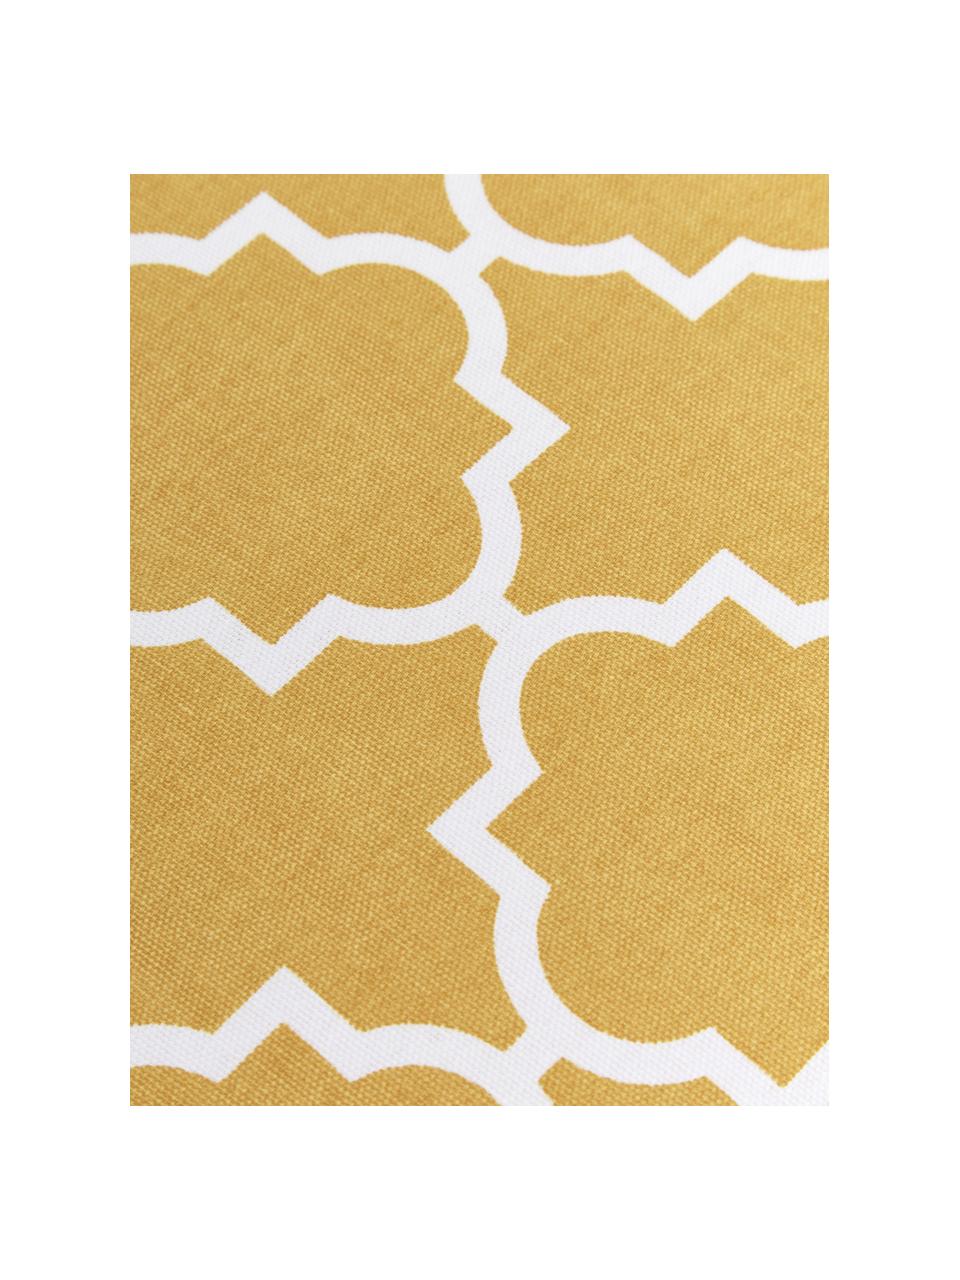 Kissenhülle Lana mit grafischem Muster, 100% Baumwolle, Senfgelb, Weiss, B 45 x L 45 cm